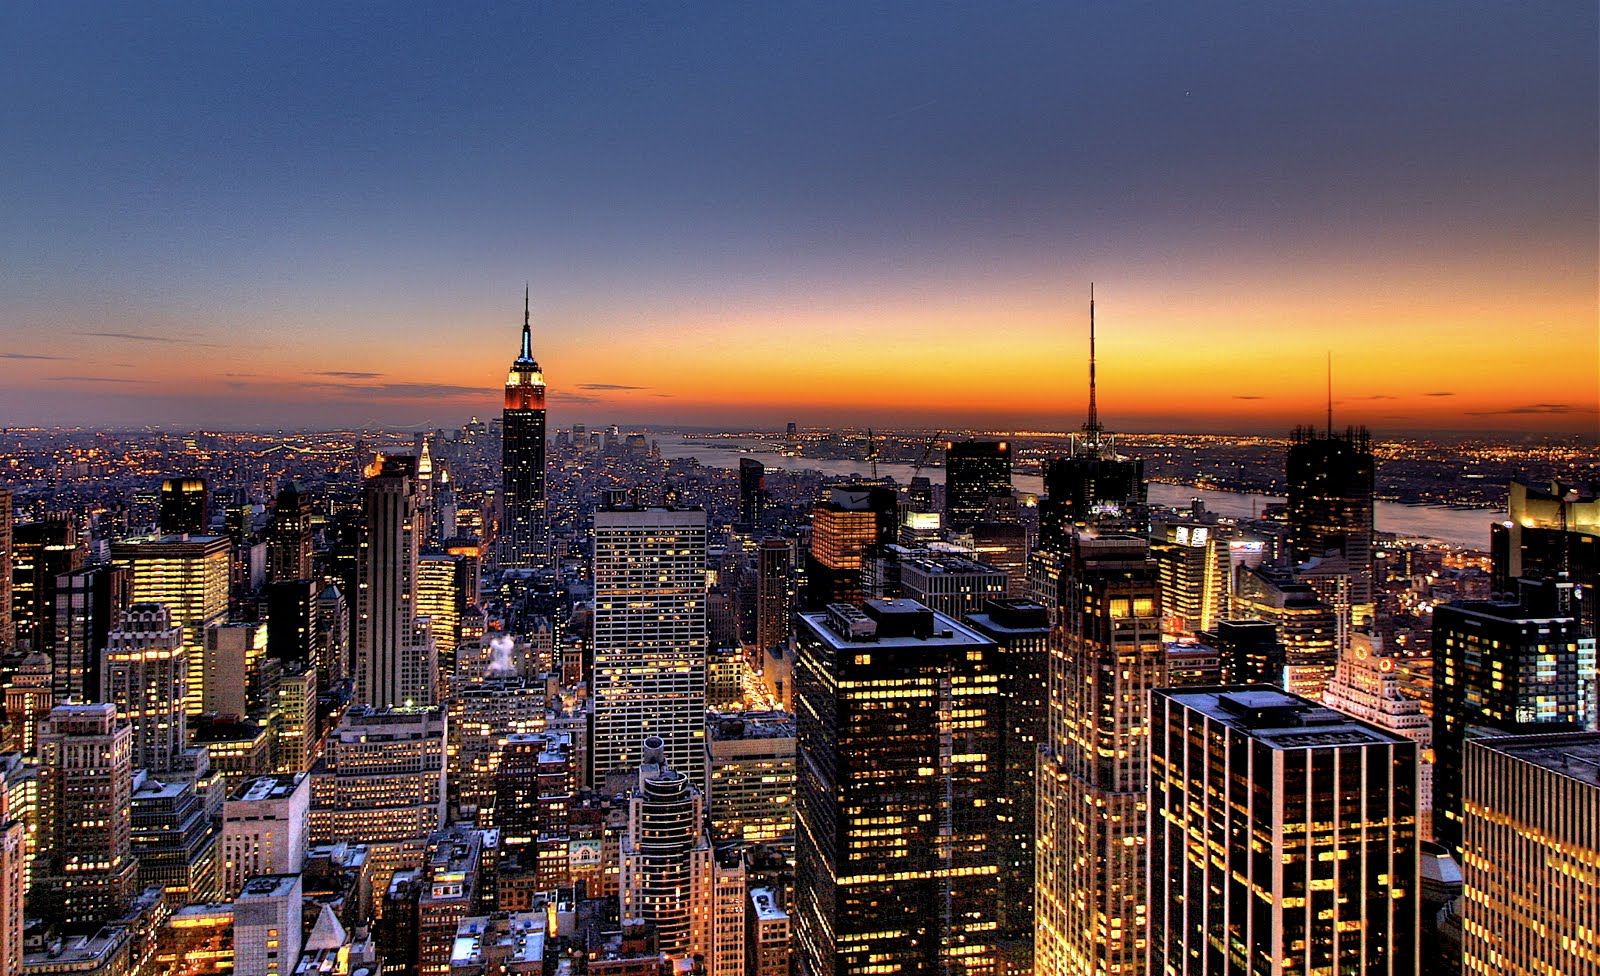 Thành phố New York, với Skyline đầy ấn tượng, luôn là điểm đến hấp dẫn của du khách khắp thế giới. Nếu bạn đang tìm kiếm một hình nền độc đáo về Skyline thành phố này, thì hãy ghé thăm WallpaperSafari! Sẵn sàng cho một chuyến phiêu lưu trong thế giới của New York.